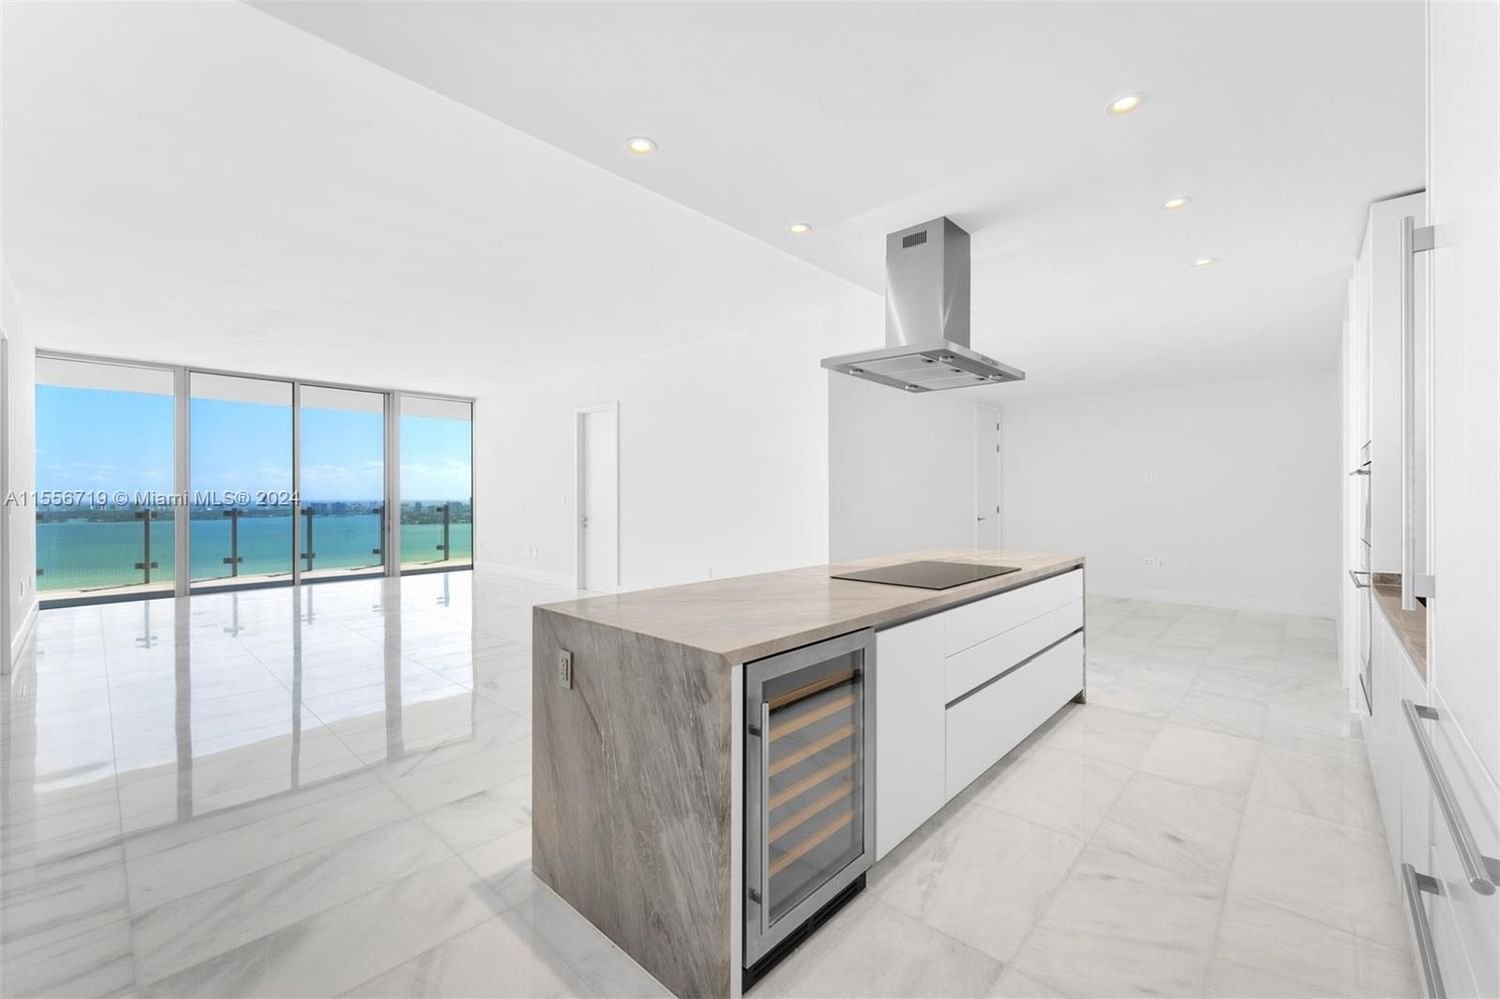 Real estate property located at 700 26th Terrace #3402, Miami-Dade County, MISSONI BAIA, Miami, FL